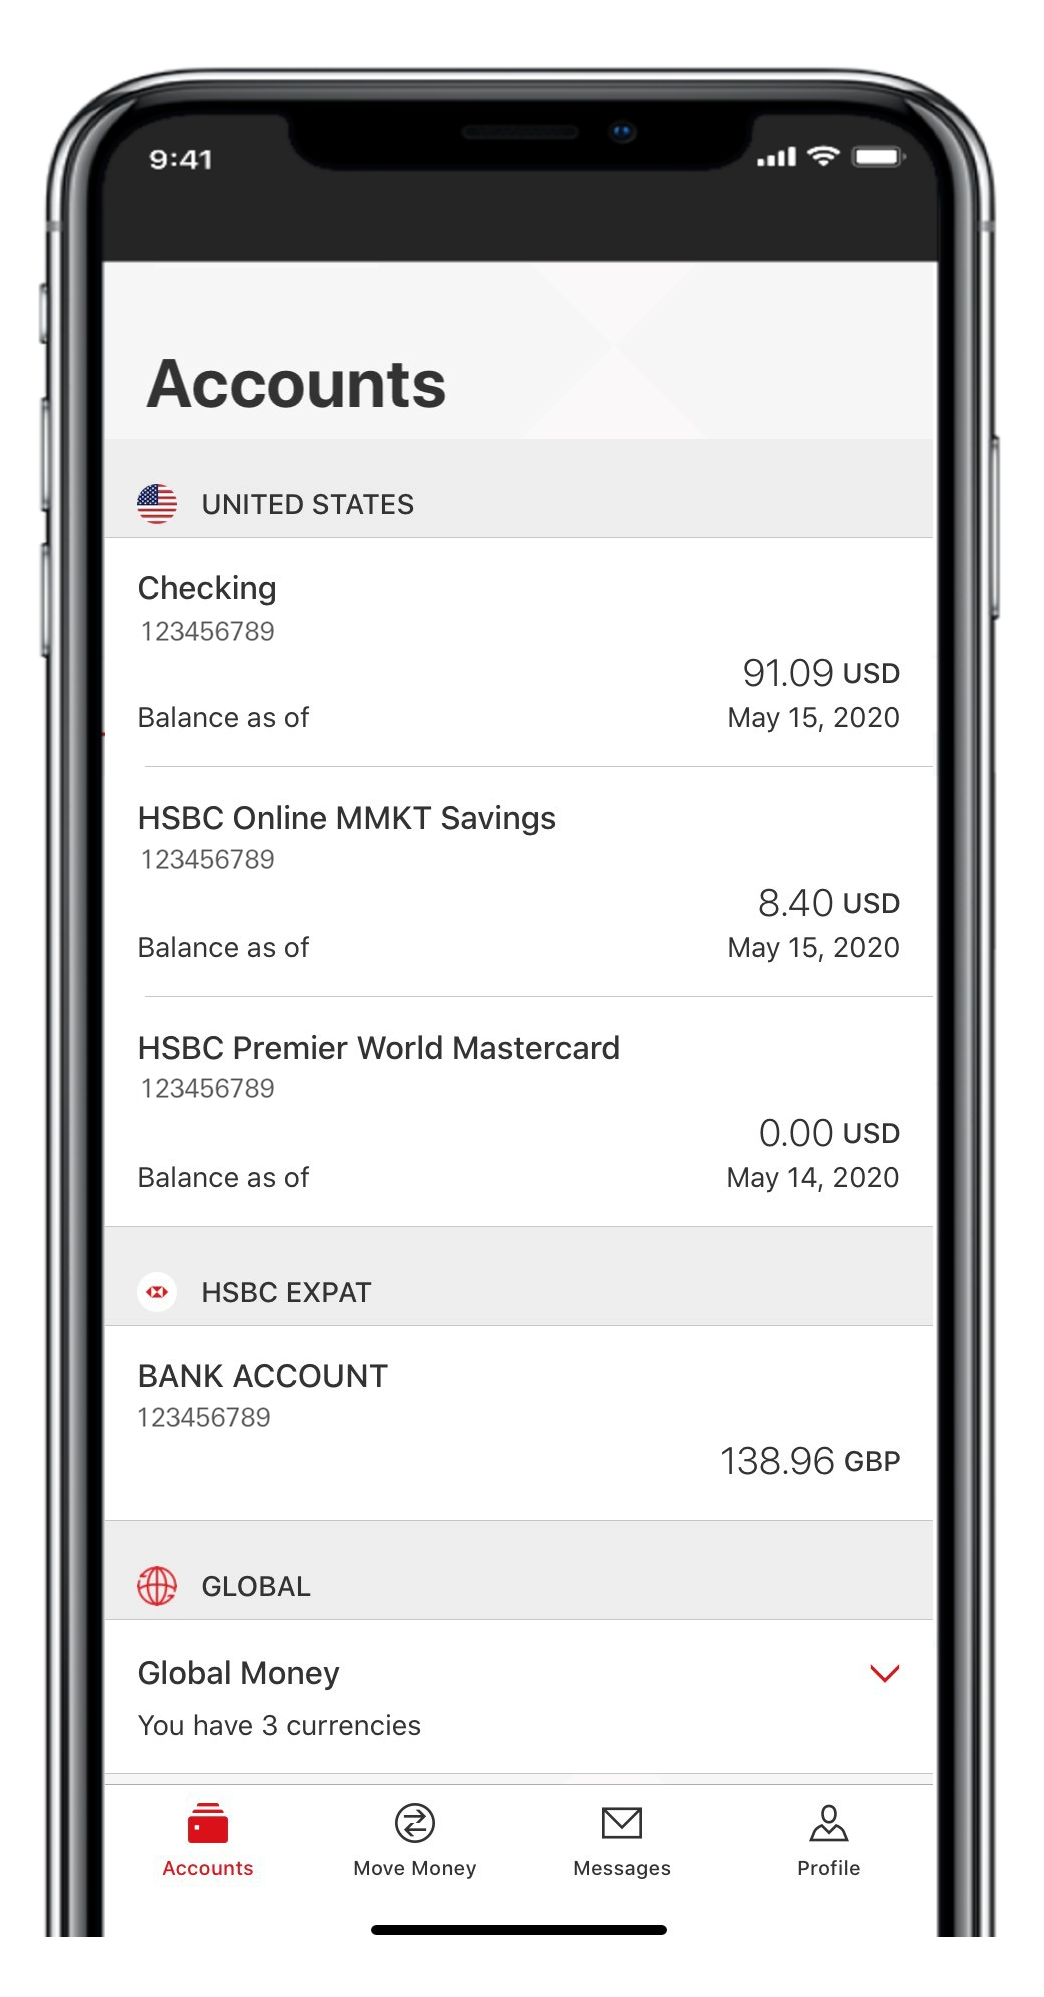 Mobile Banking - HSBC Bank USA